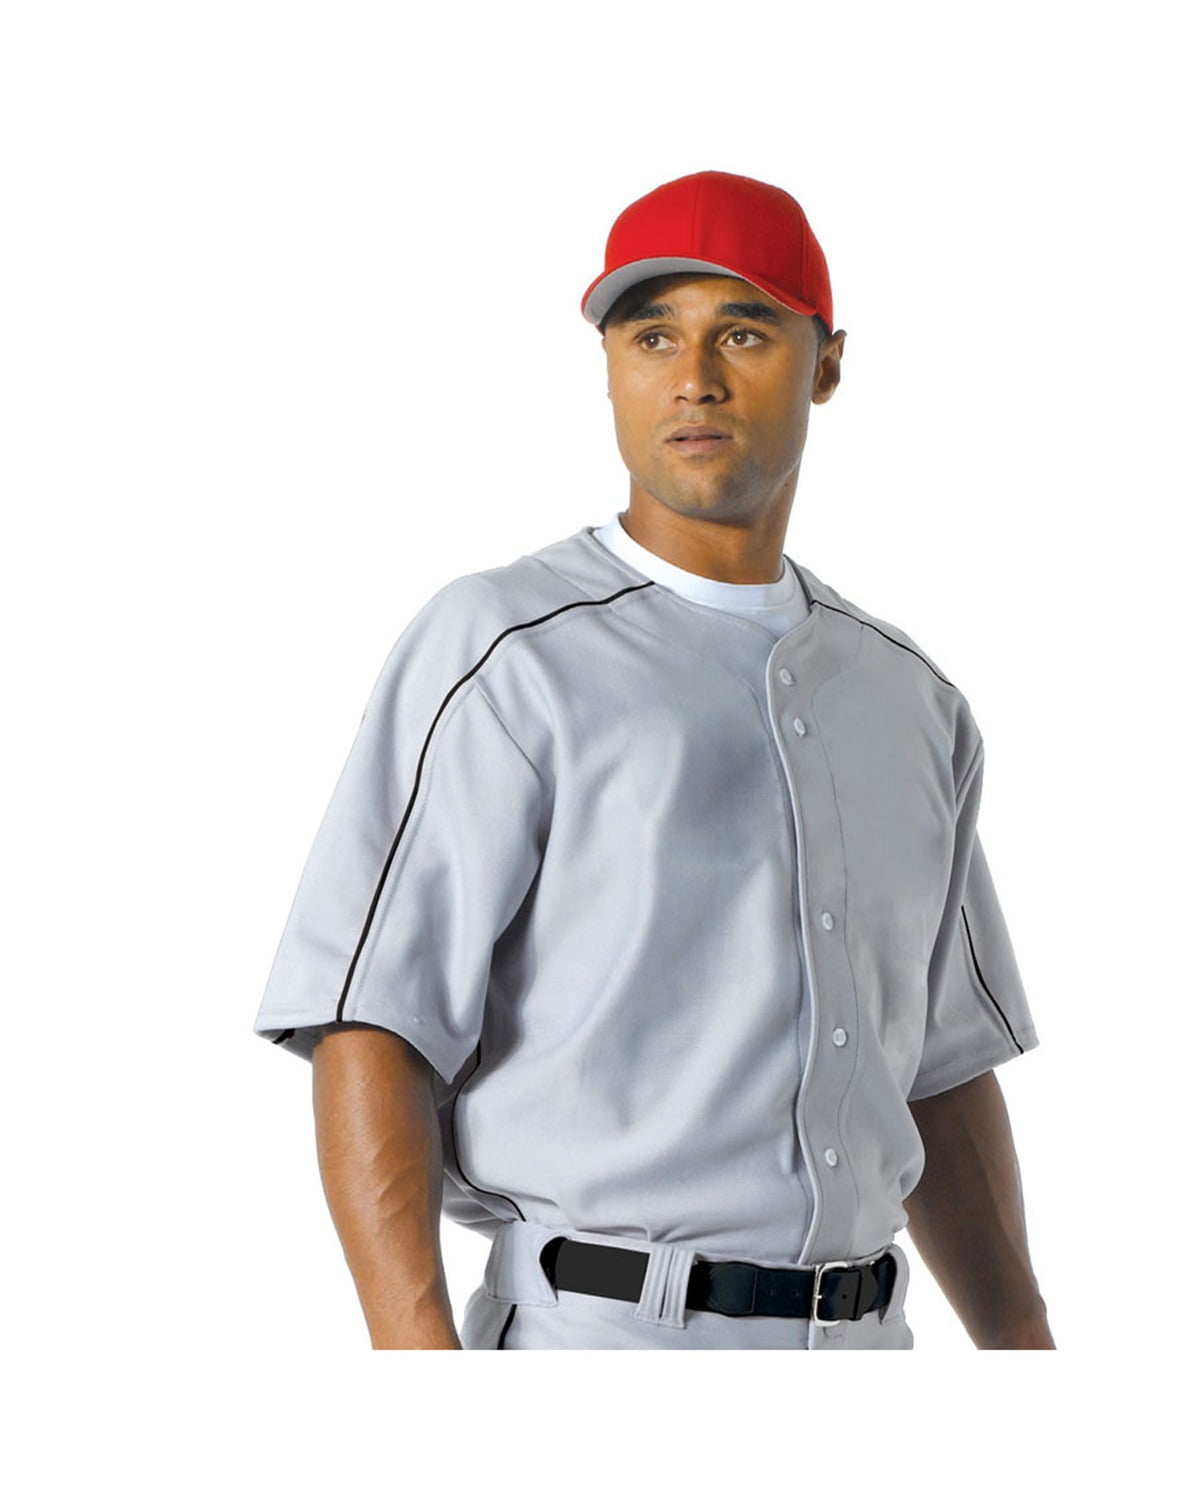 a4 baseball jersey